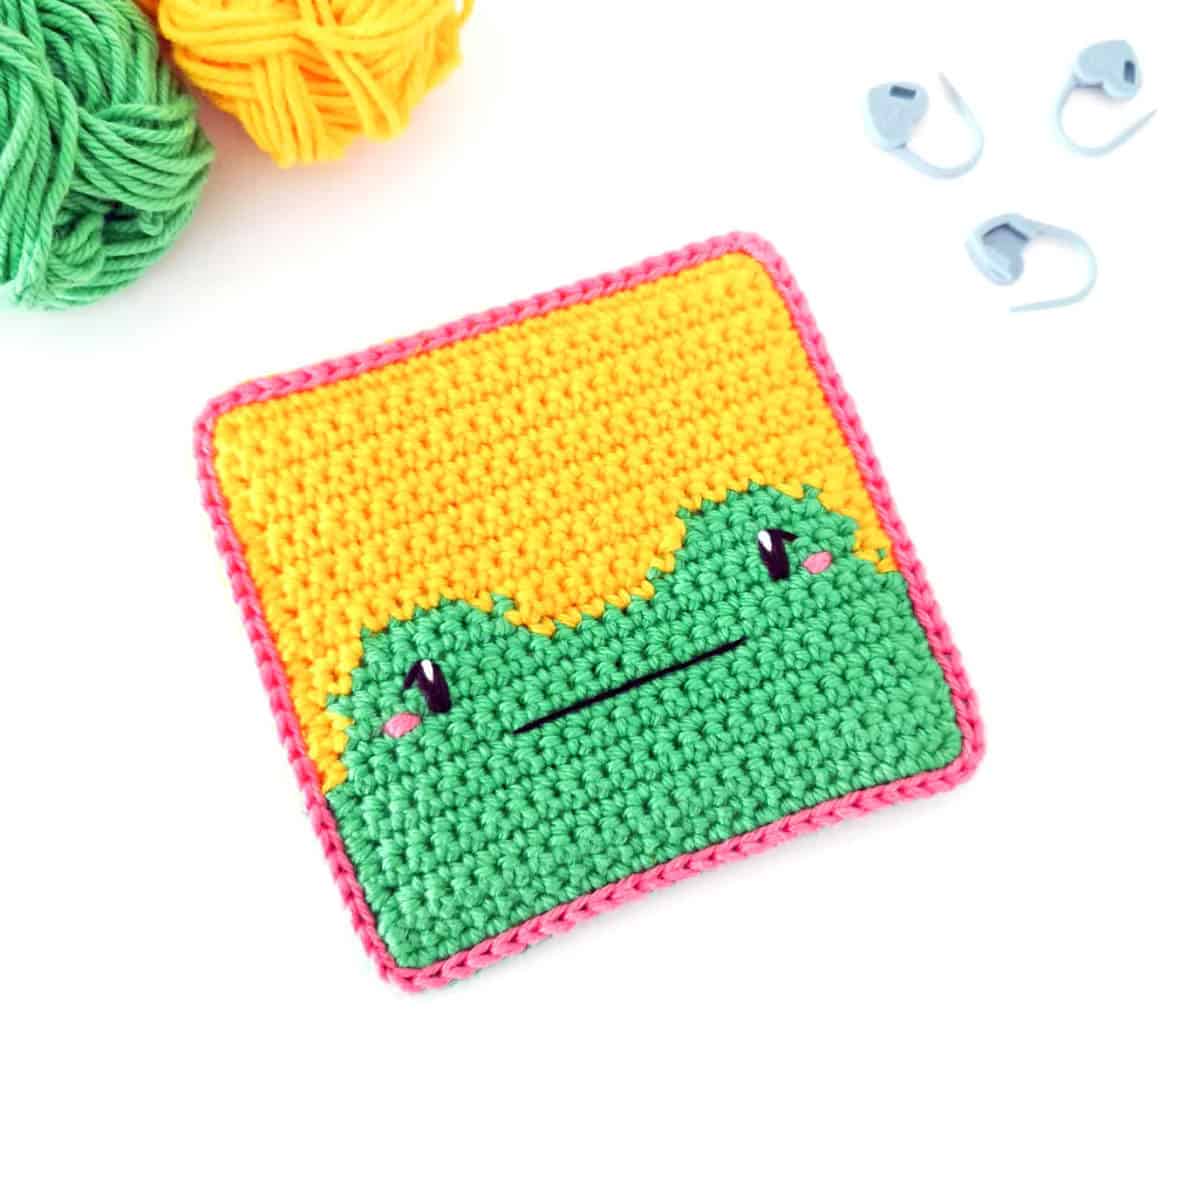 Crochet frog square.